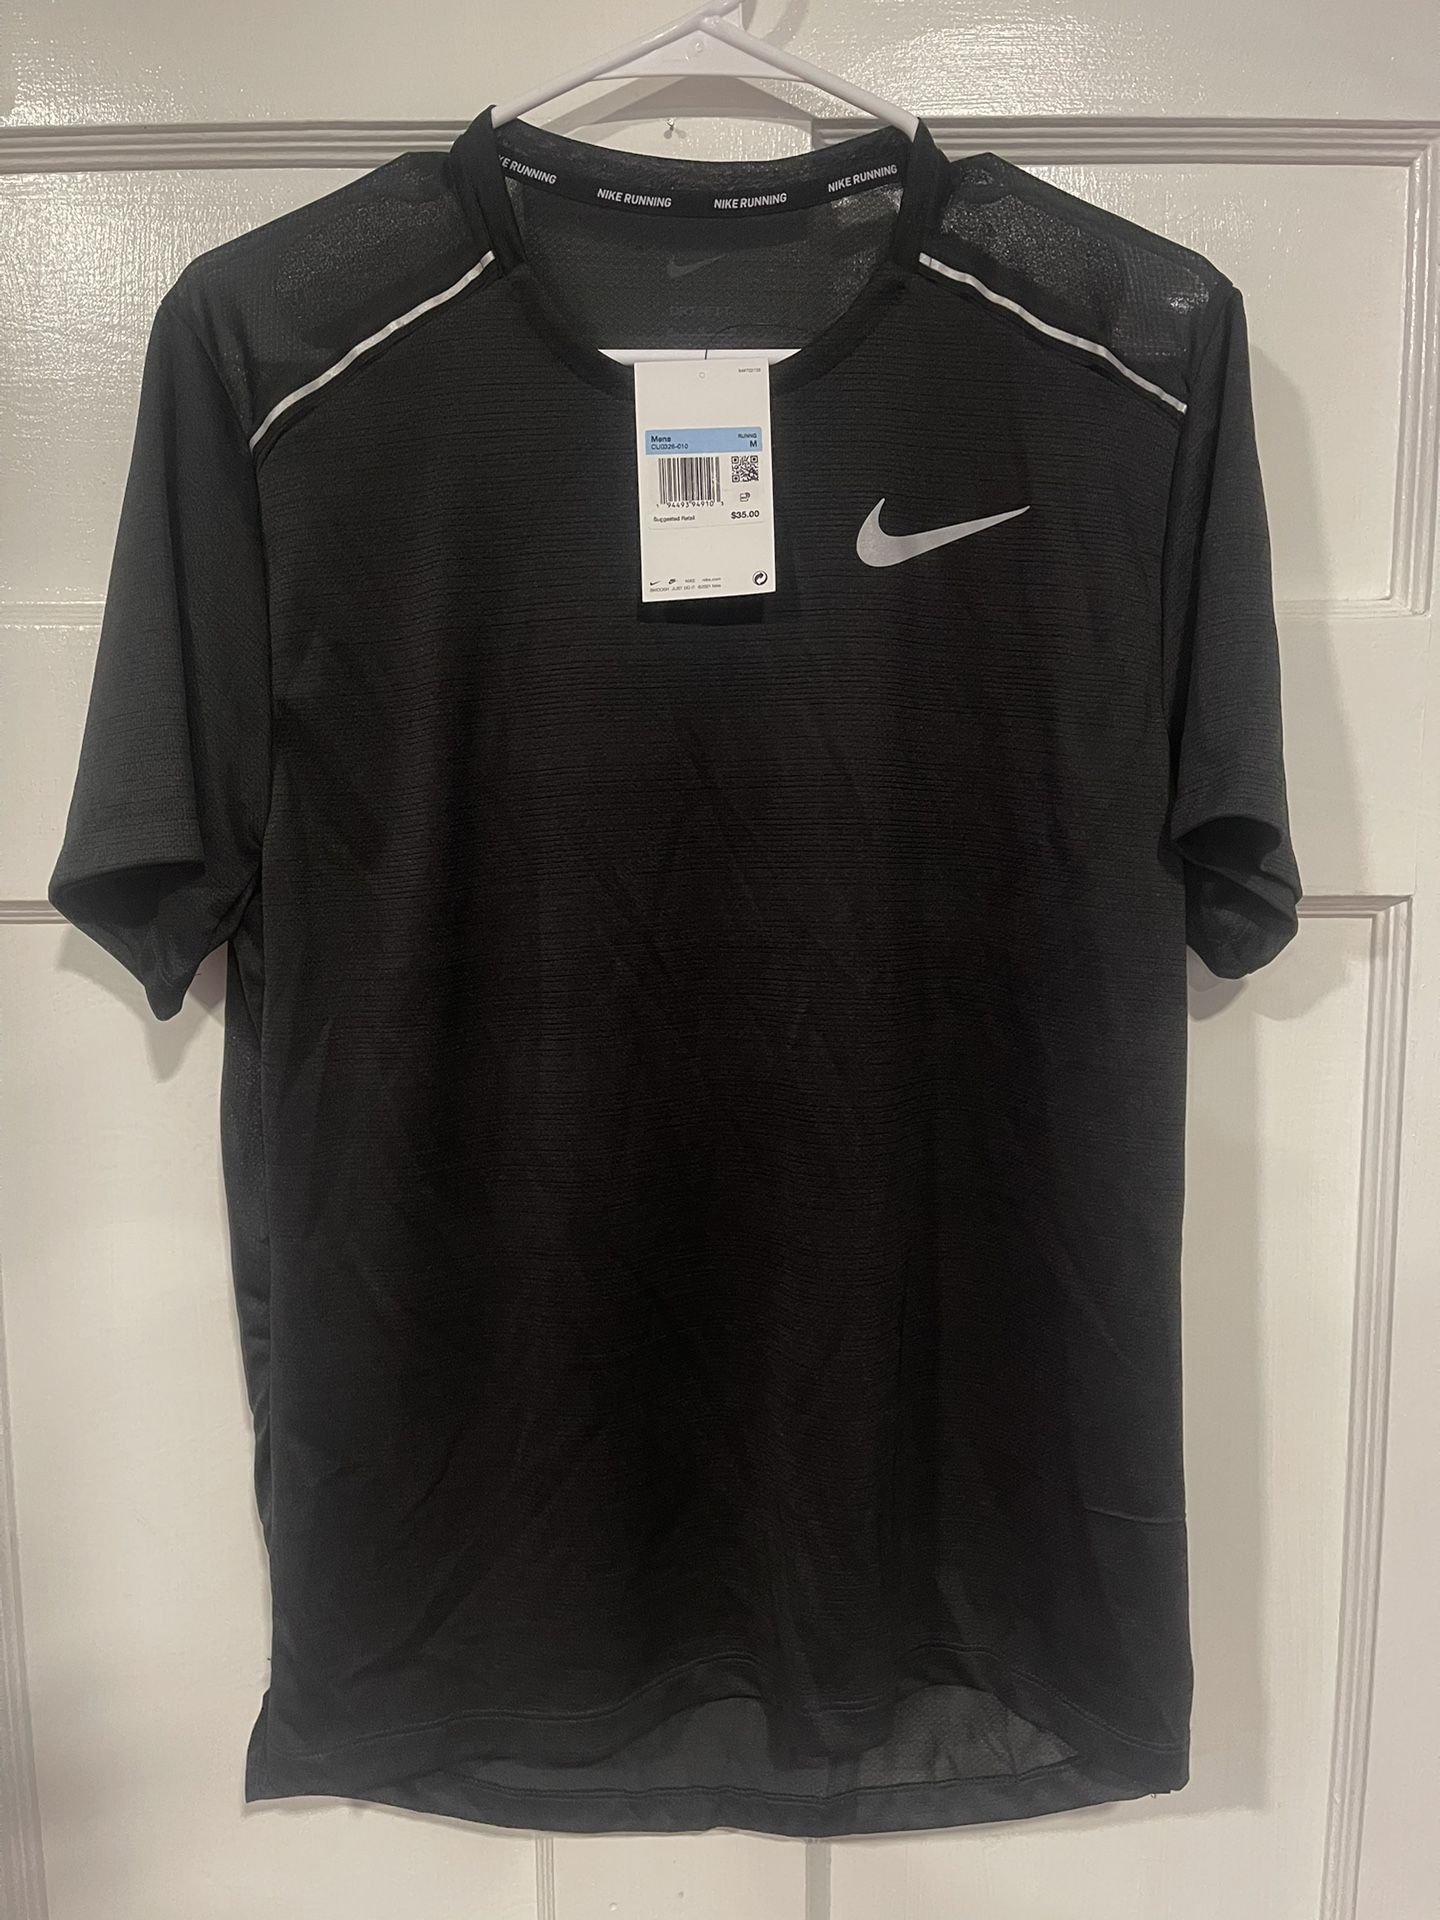 Nike Dri-Fit Short Sleeve Shirt